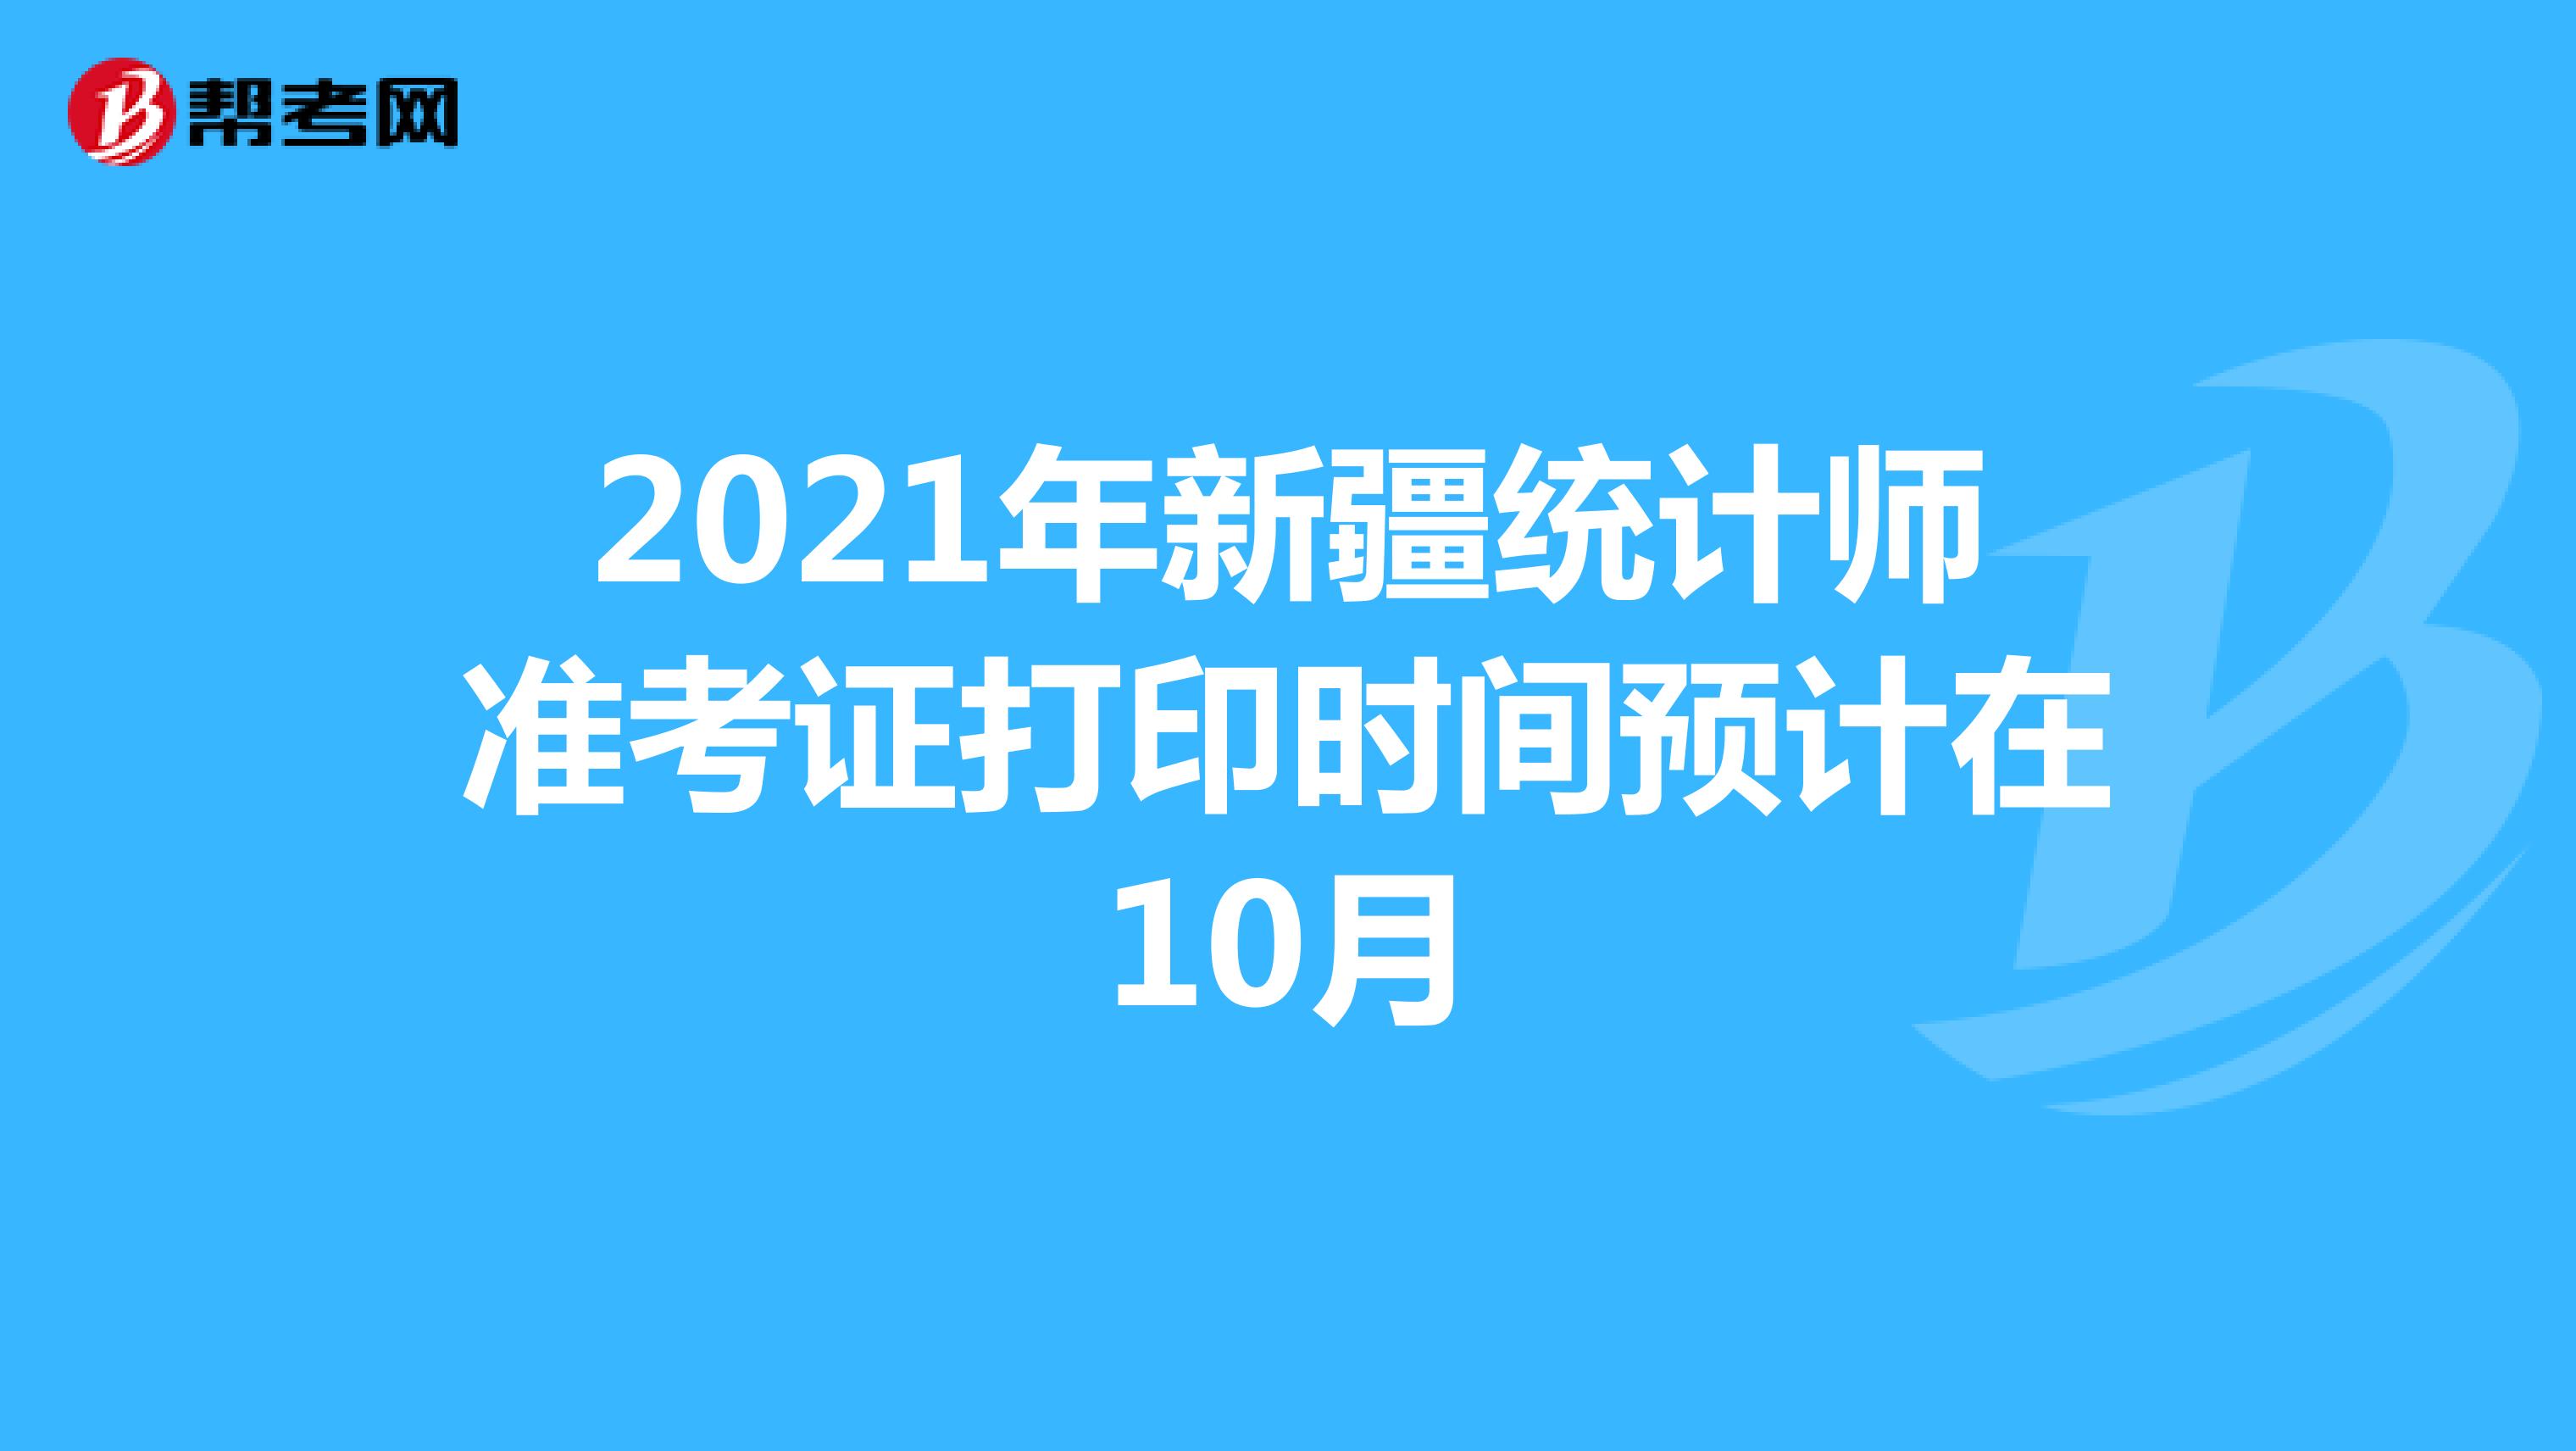 2021年新疆统计师准考证打印时间预计在10月